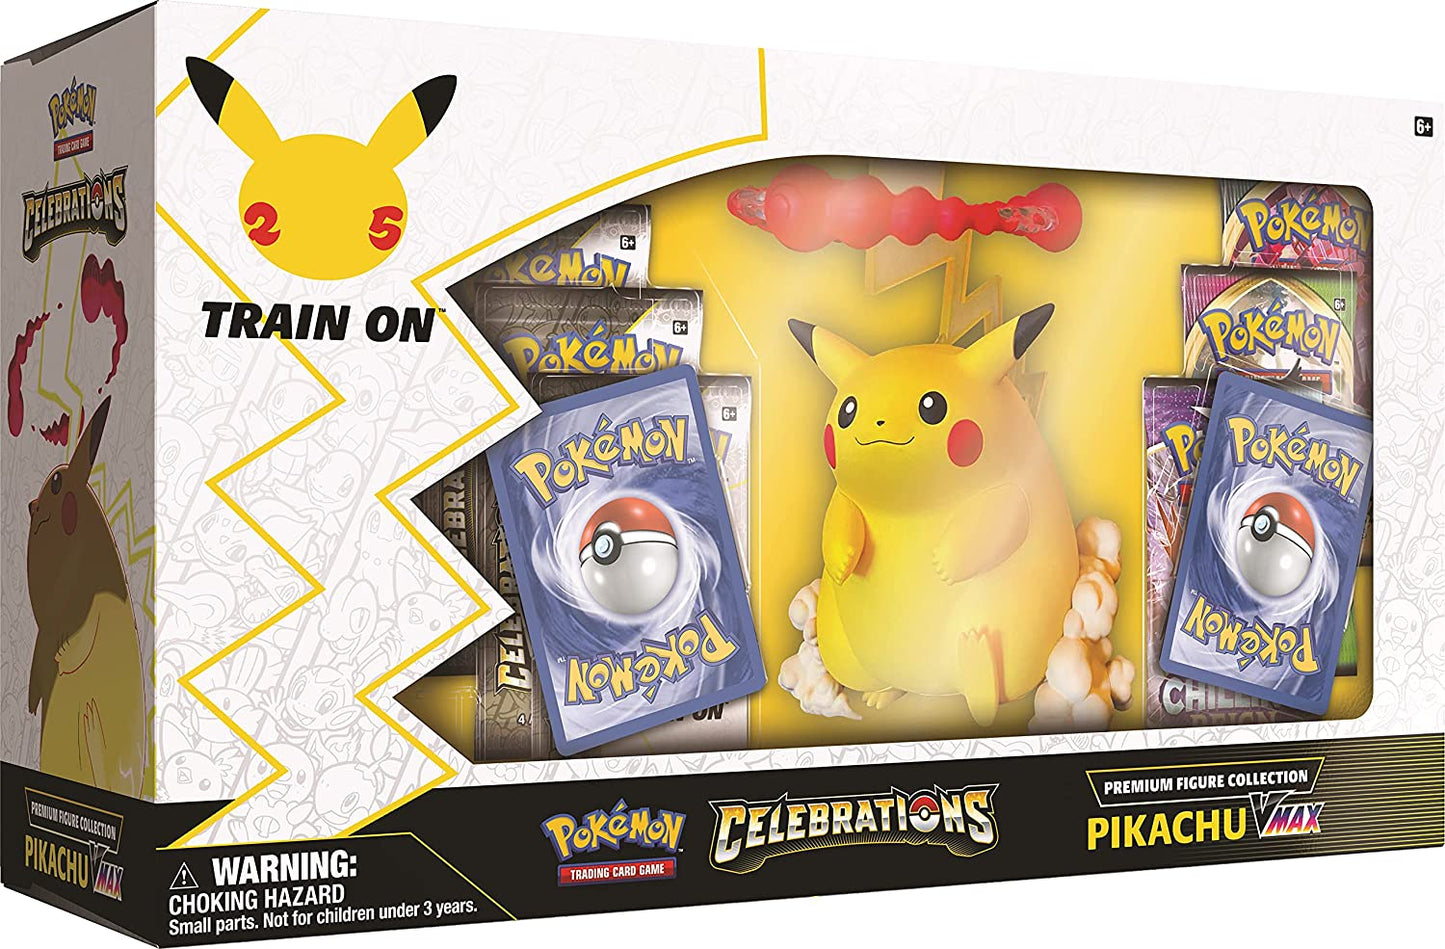 Pokémon - Celebrations Premium Figure Collection Pikachu VMAX